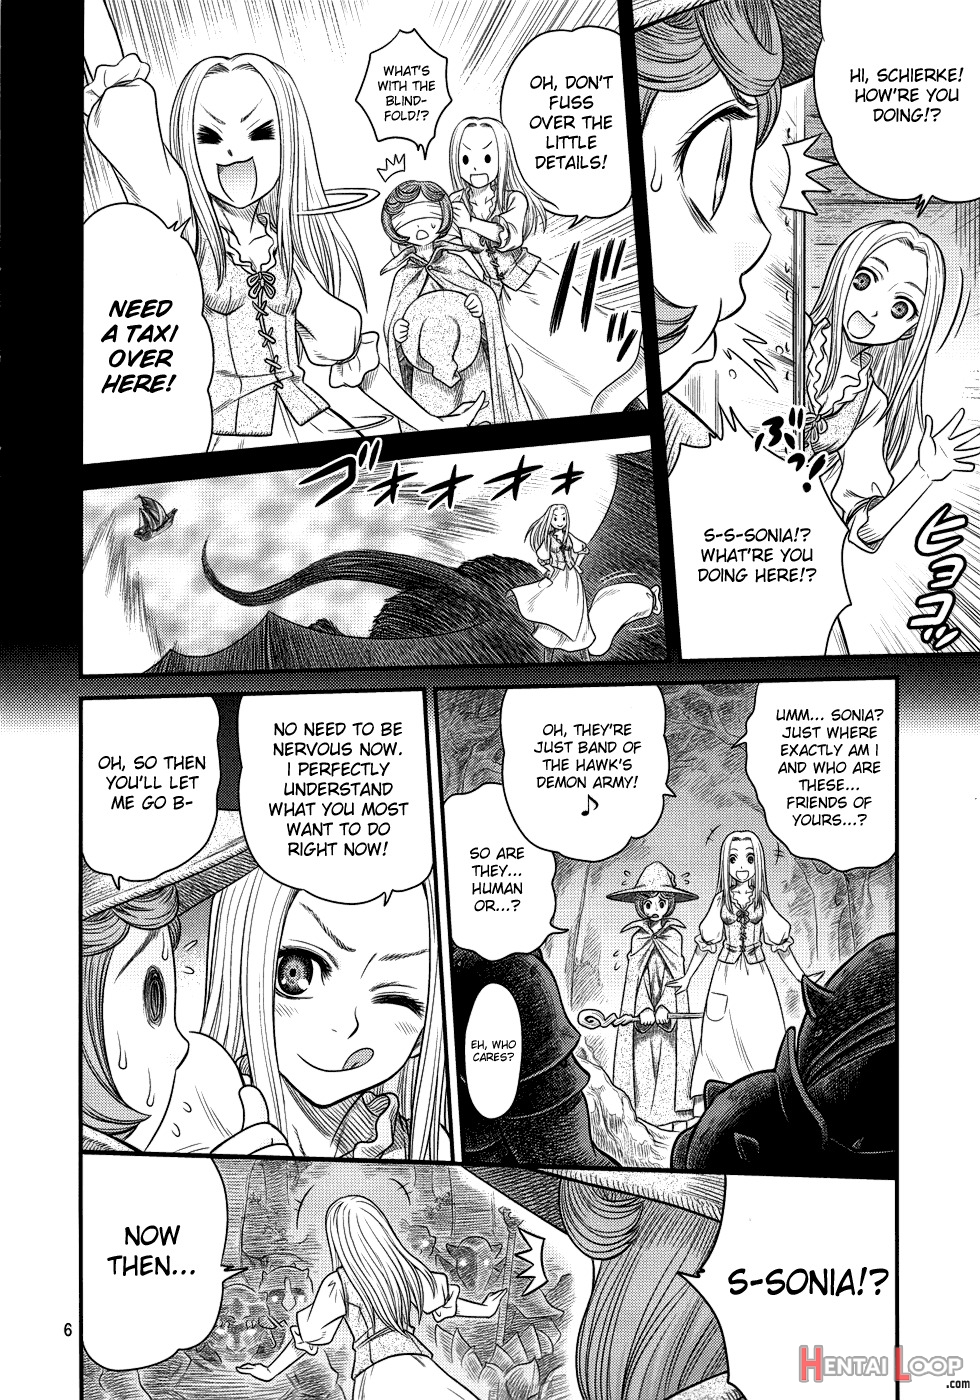 Kuru Kuru Sonia!! page 5